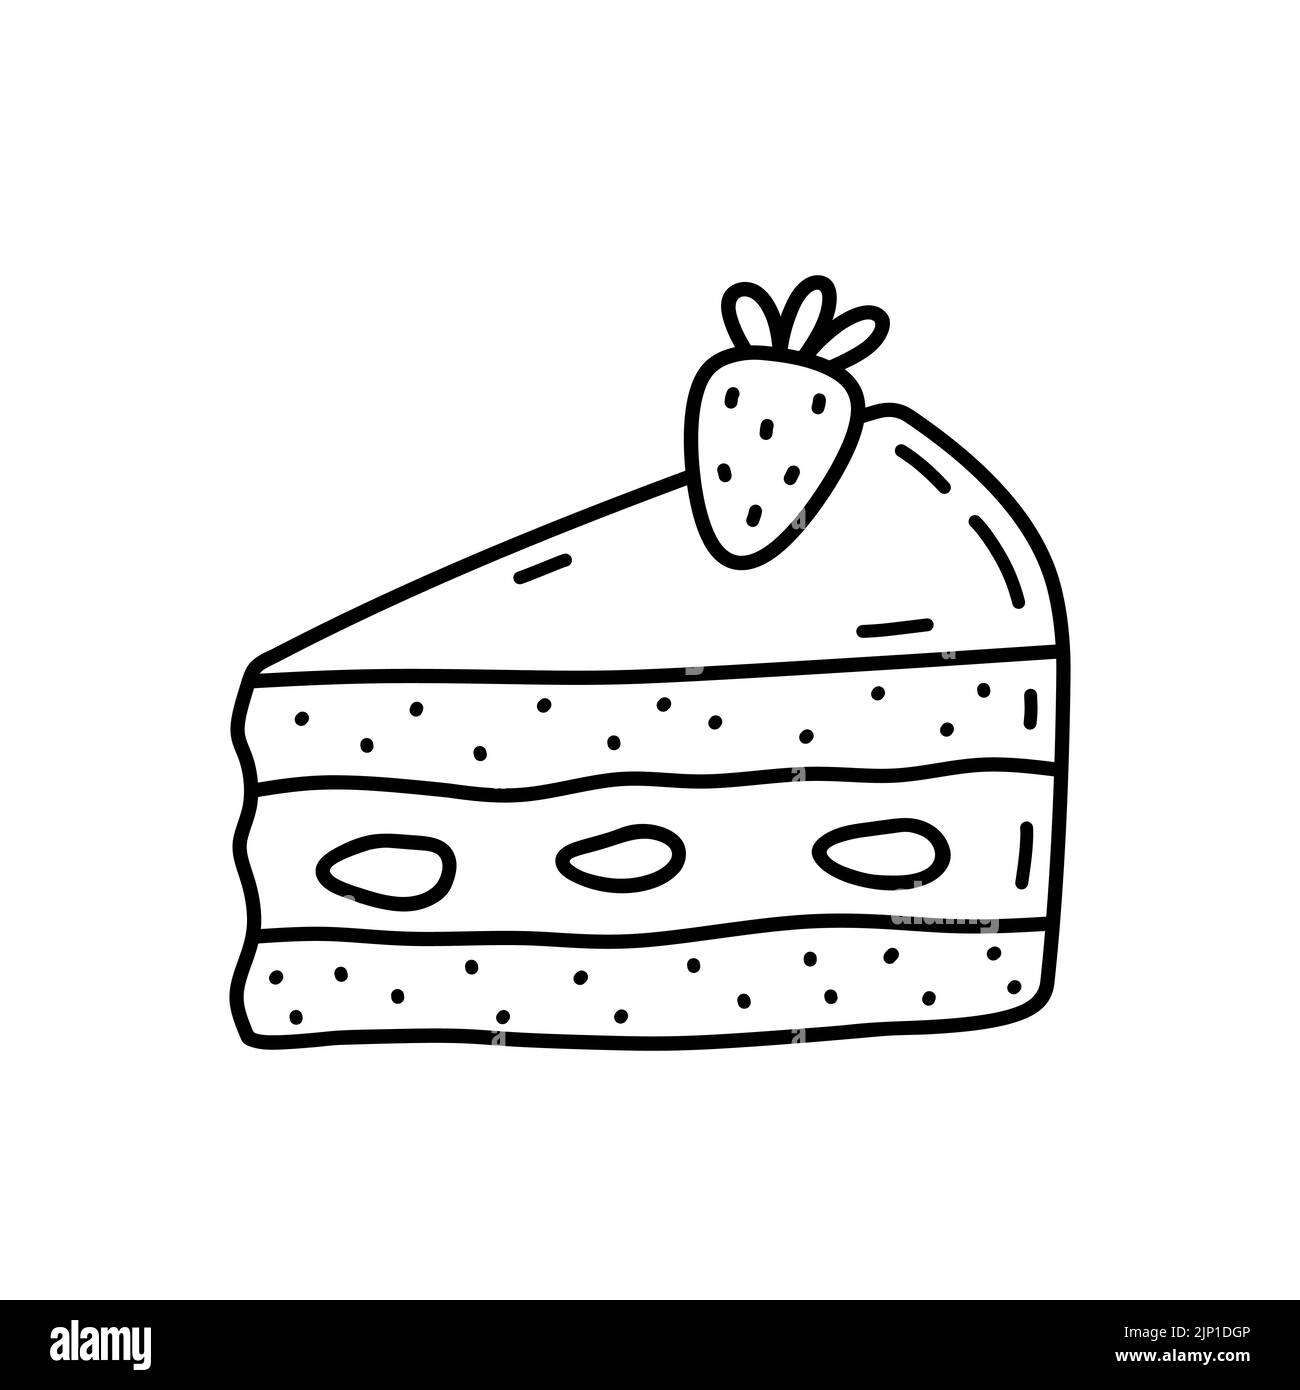 Stück Kuchen mit Erdbeere isoliert auf weißem Hintergrund. Süßes Dessert, süßes Essen. Vektor-handgezeichnete Illustration im Doodle-Stil. Perfekt für verschiedene Designs, Karten, Dekorationen, Logo, Menü. Stock Vektor